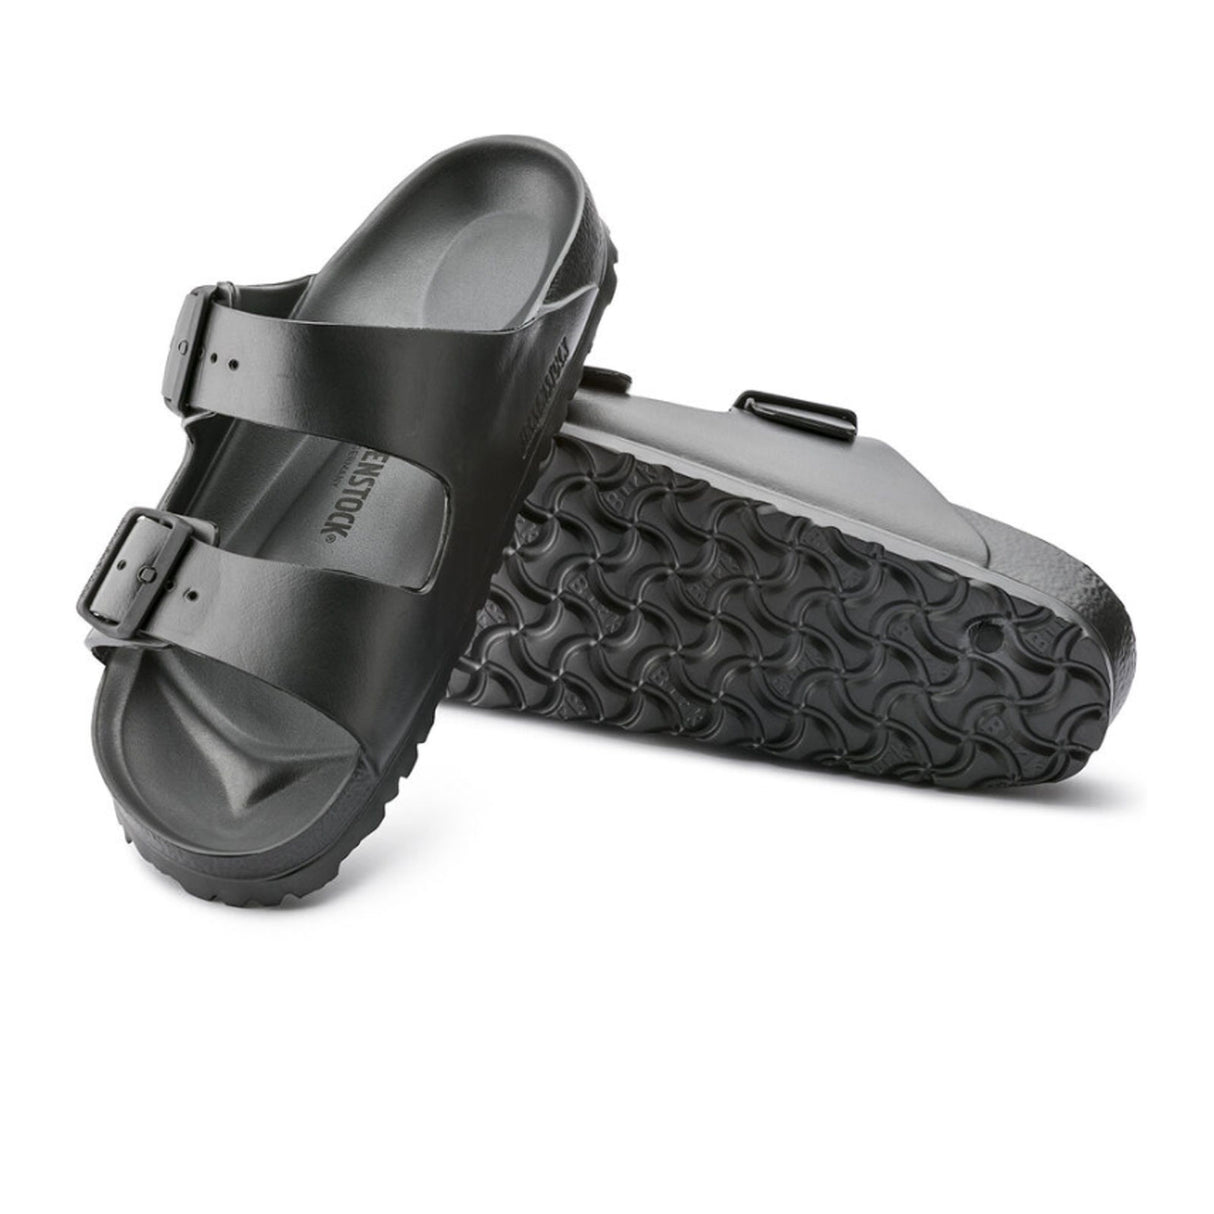 Birkenstock Arizona EVA Narrow (Women) - Metallic Anthracite Sandals - Slide - The Heel Shoe Fitters